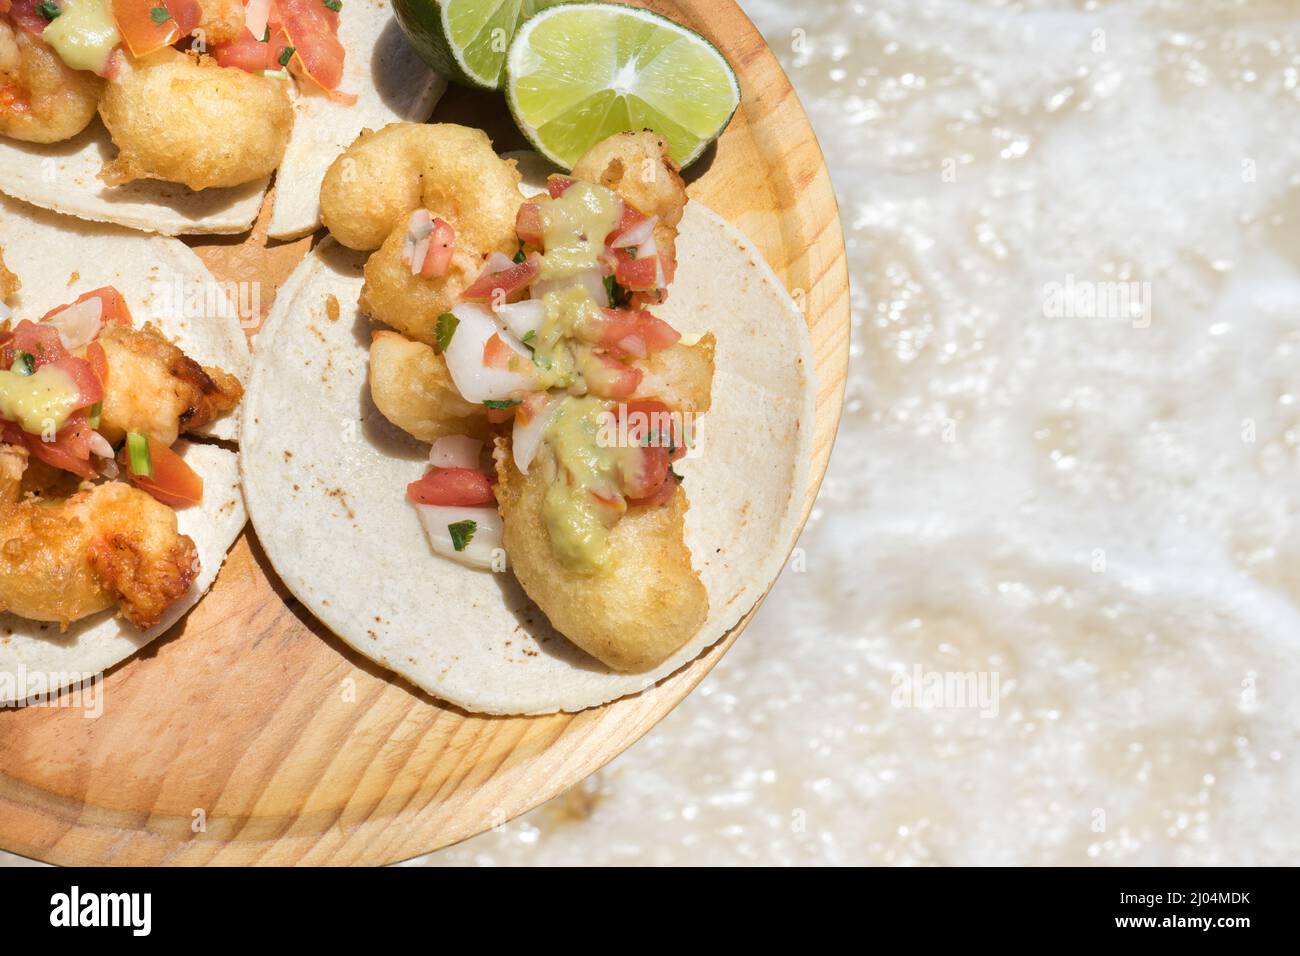 Tacos mexicains traditionnels aux crevettes Banque D'Images